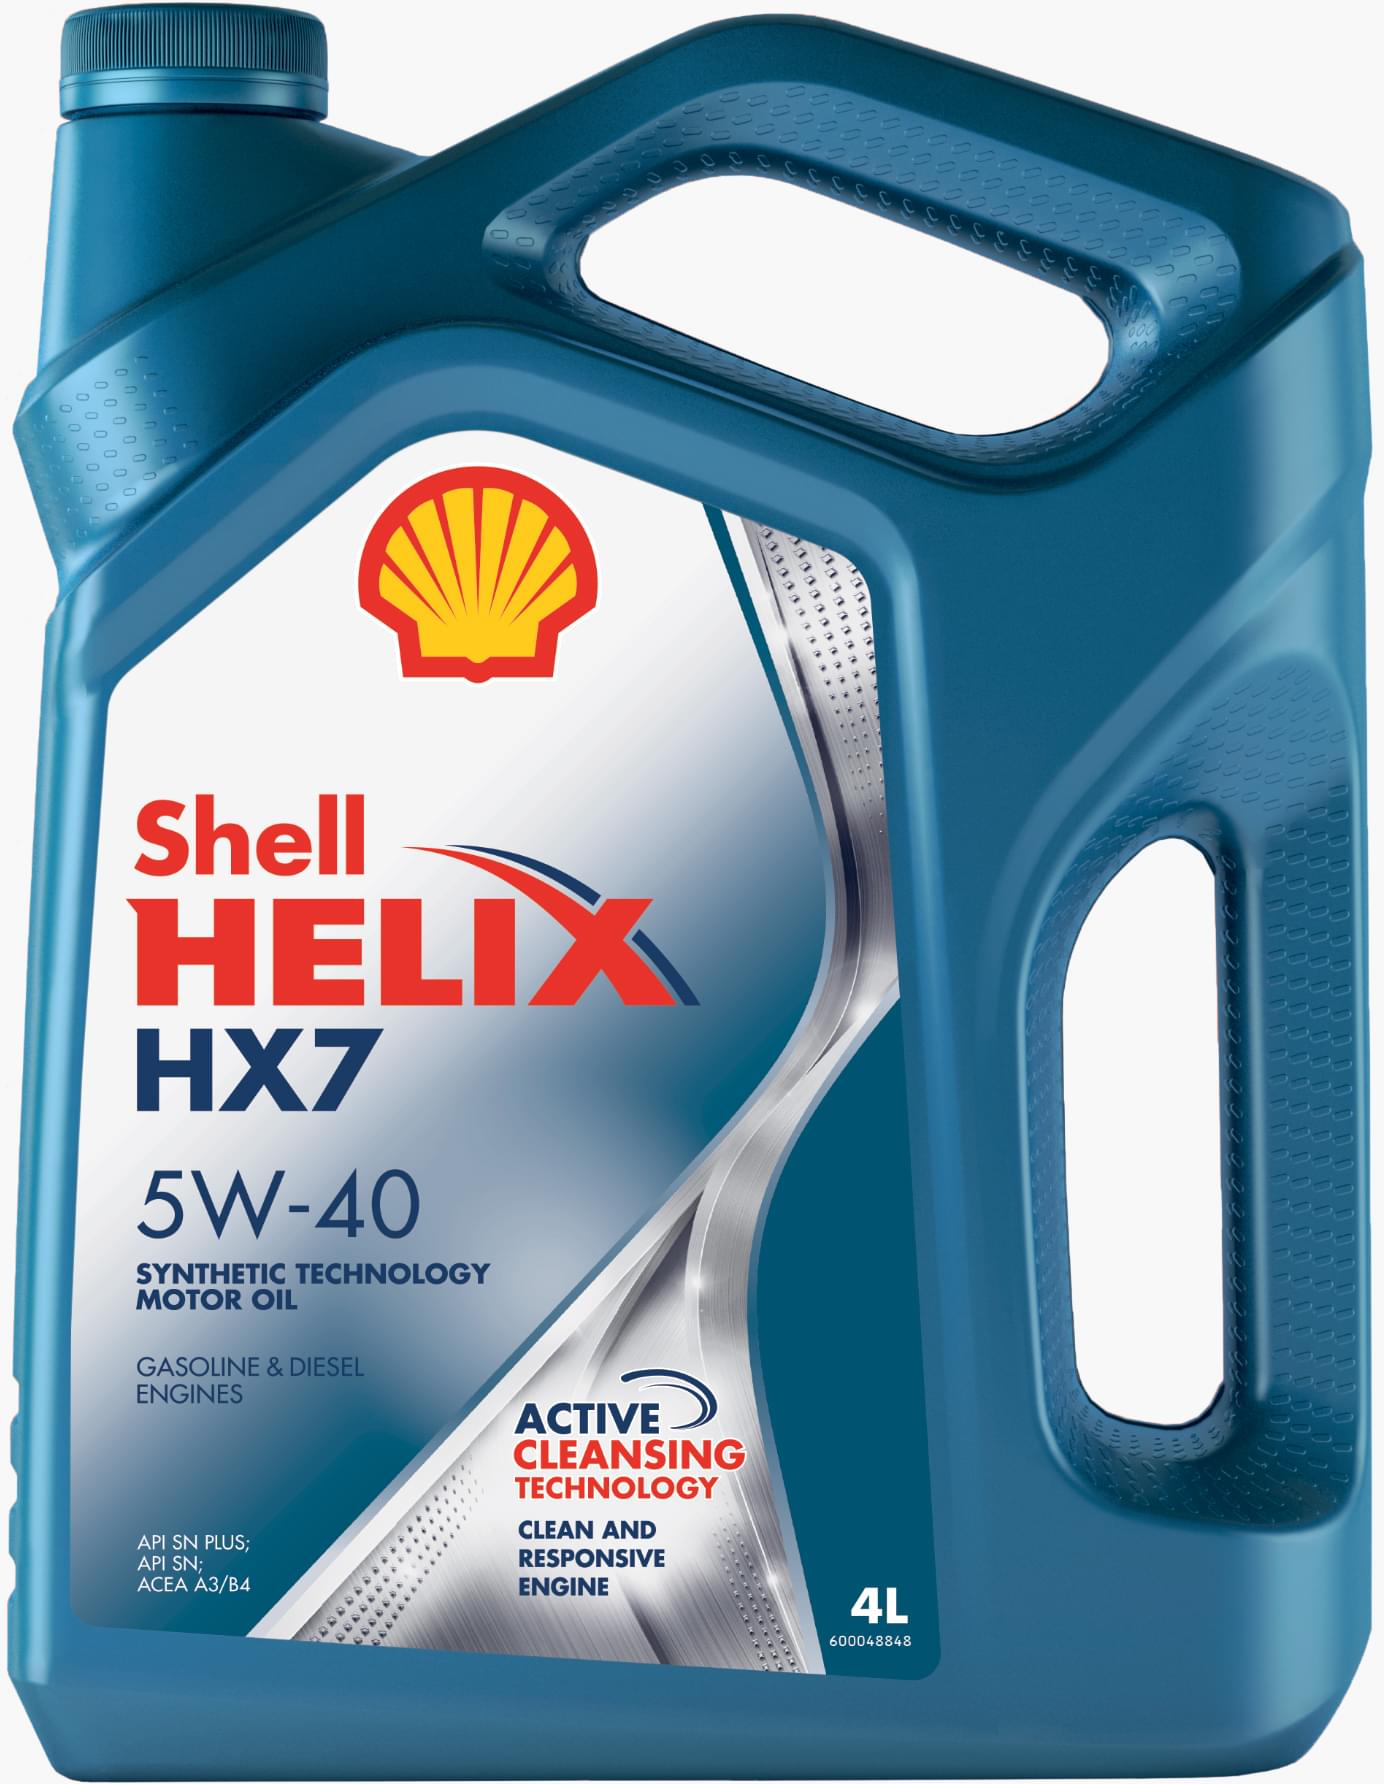 Описание масла SHELL Helix HX7 5W-40 и его основные характеристики